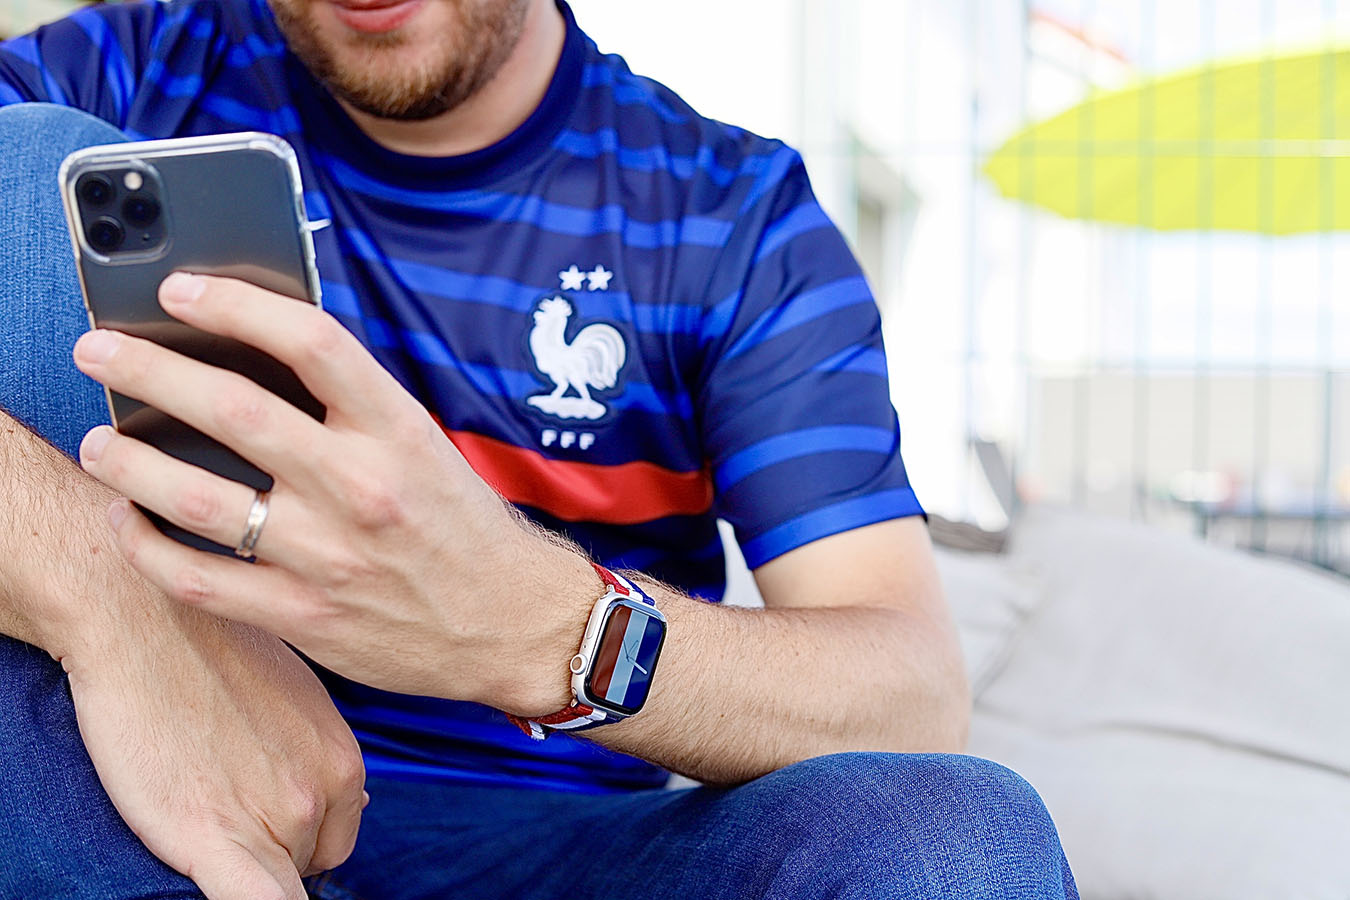 Jeune homme qui porte un maillot de l'équipe de France de football avec un iPhone dans la main et une Apple Watch avec un bracelet aux couleurs du drapeau français. ©2021 Mathieu Improvisato